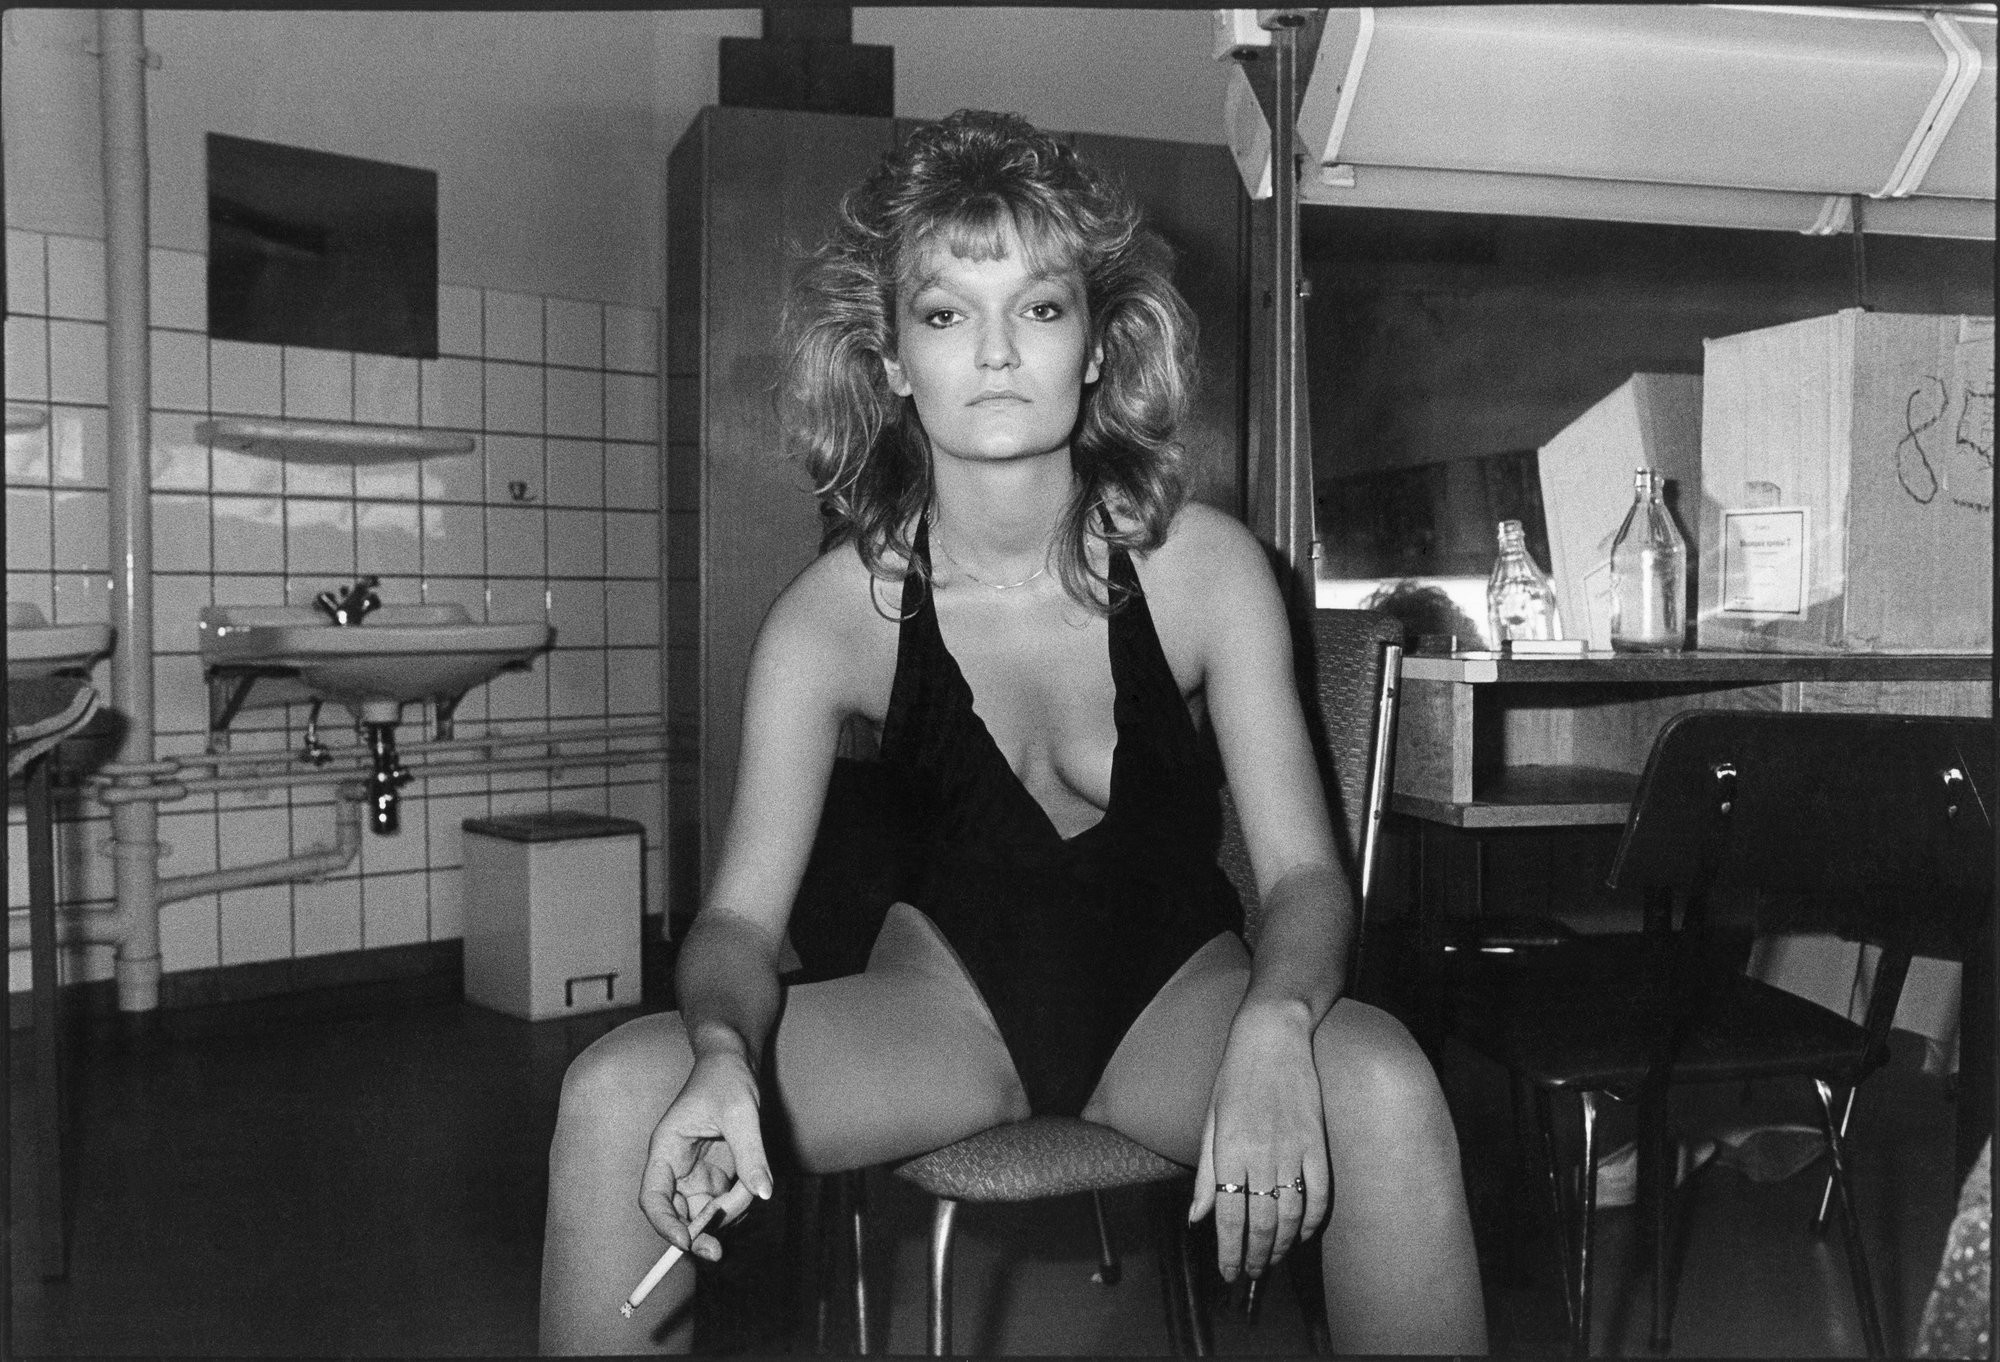 Участница эротического шоу в гардеробной. Карл-Маркс-Штадт (ныне Хемниц), Саксония, 1988. Фотограф Уте Малер